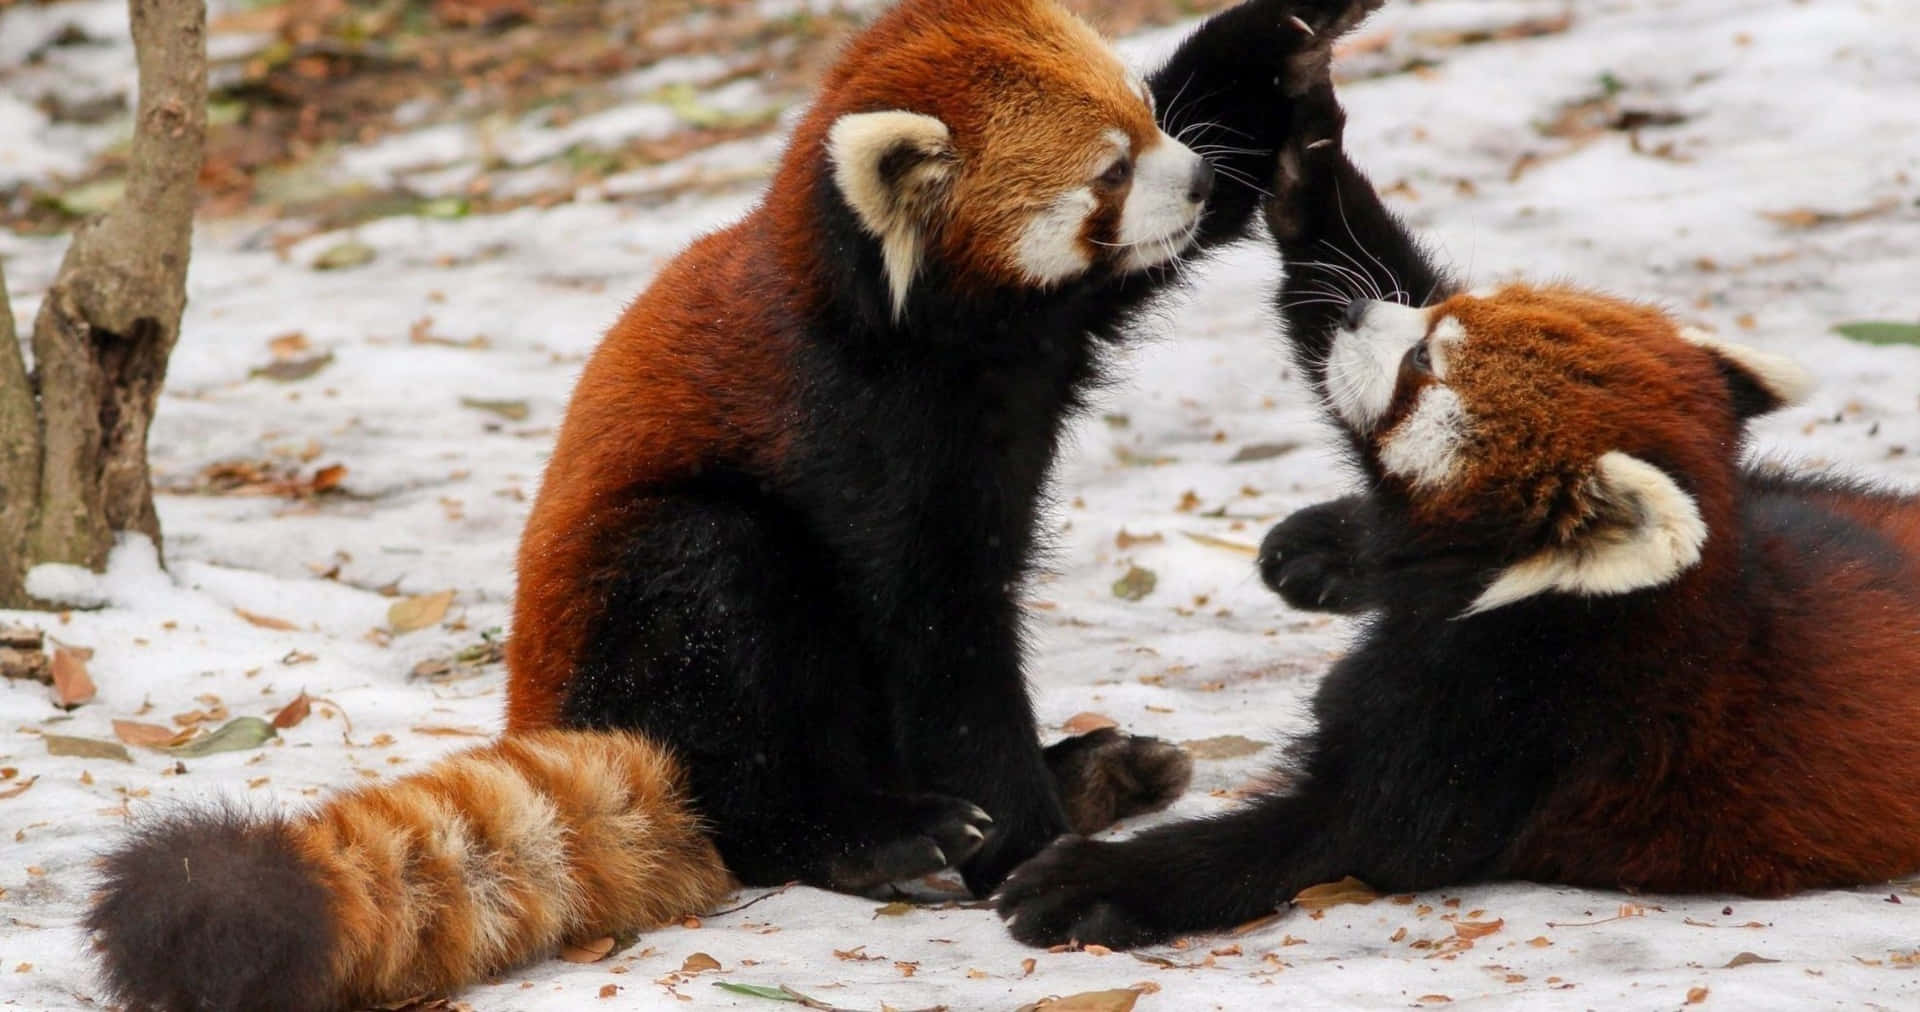 Imagende Un Lindo Panda Rojo Luchando En La Nieve